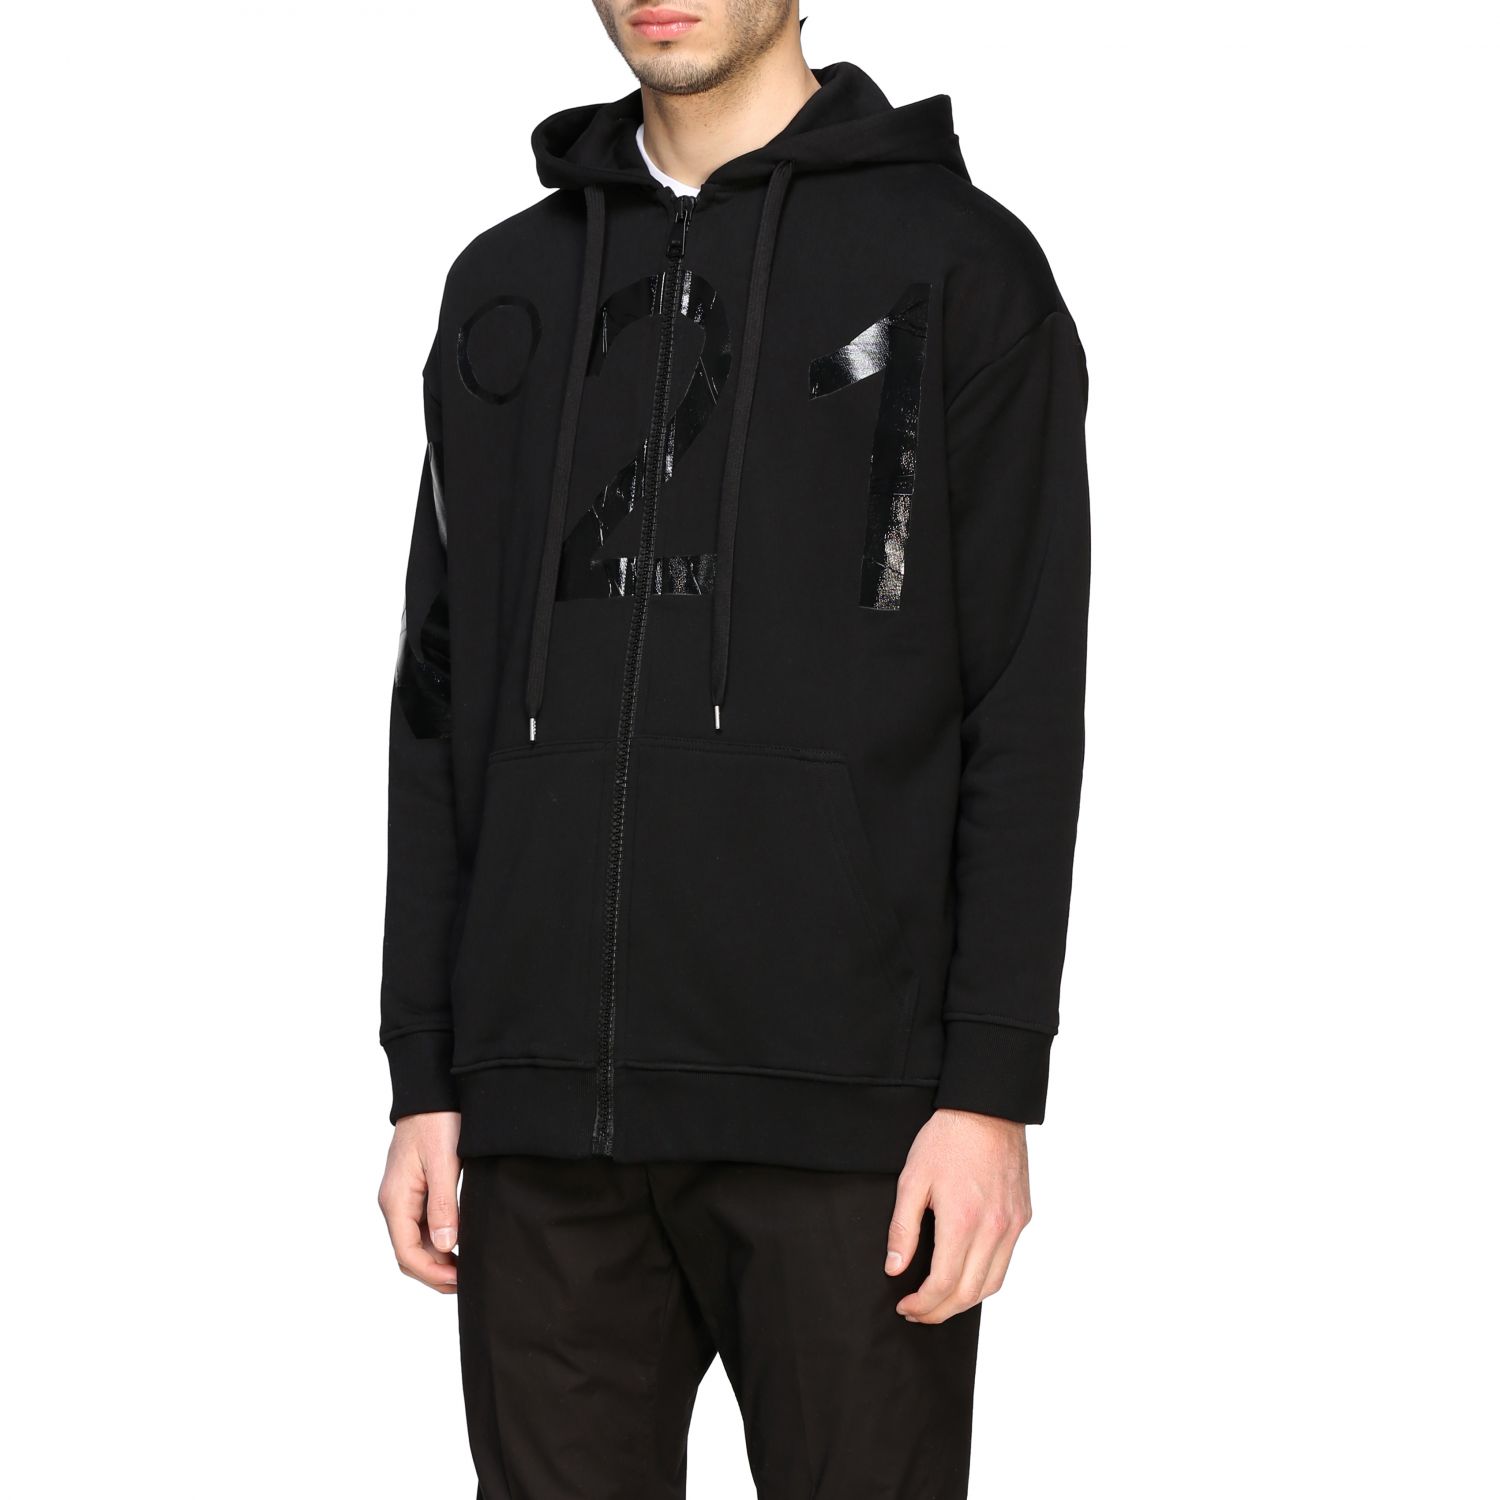 N° 21 Outlet: N ° 21 sweatshirt with hood and big logo - Black | N° 21 ...